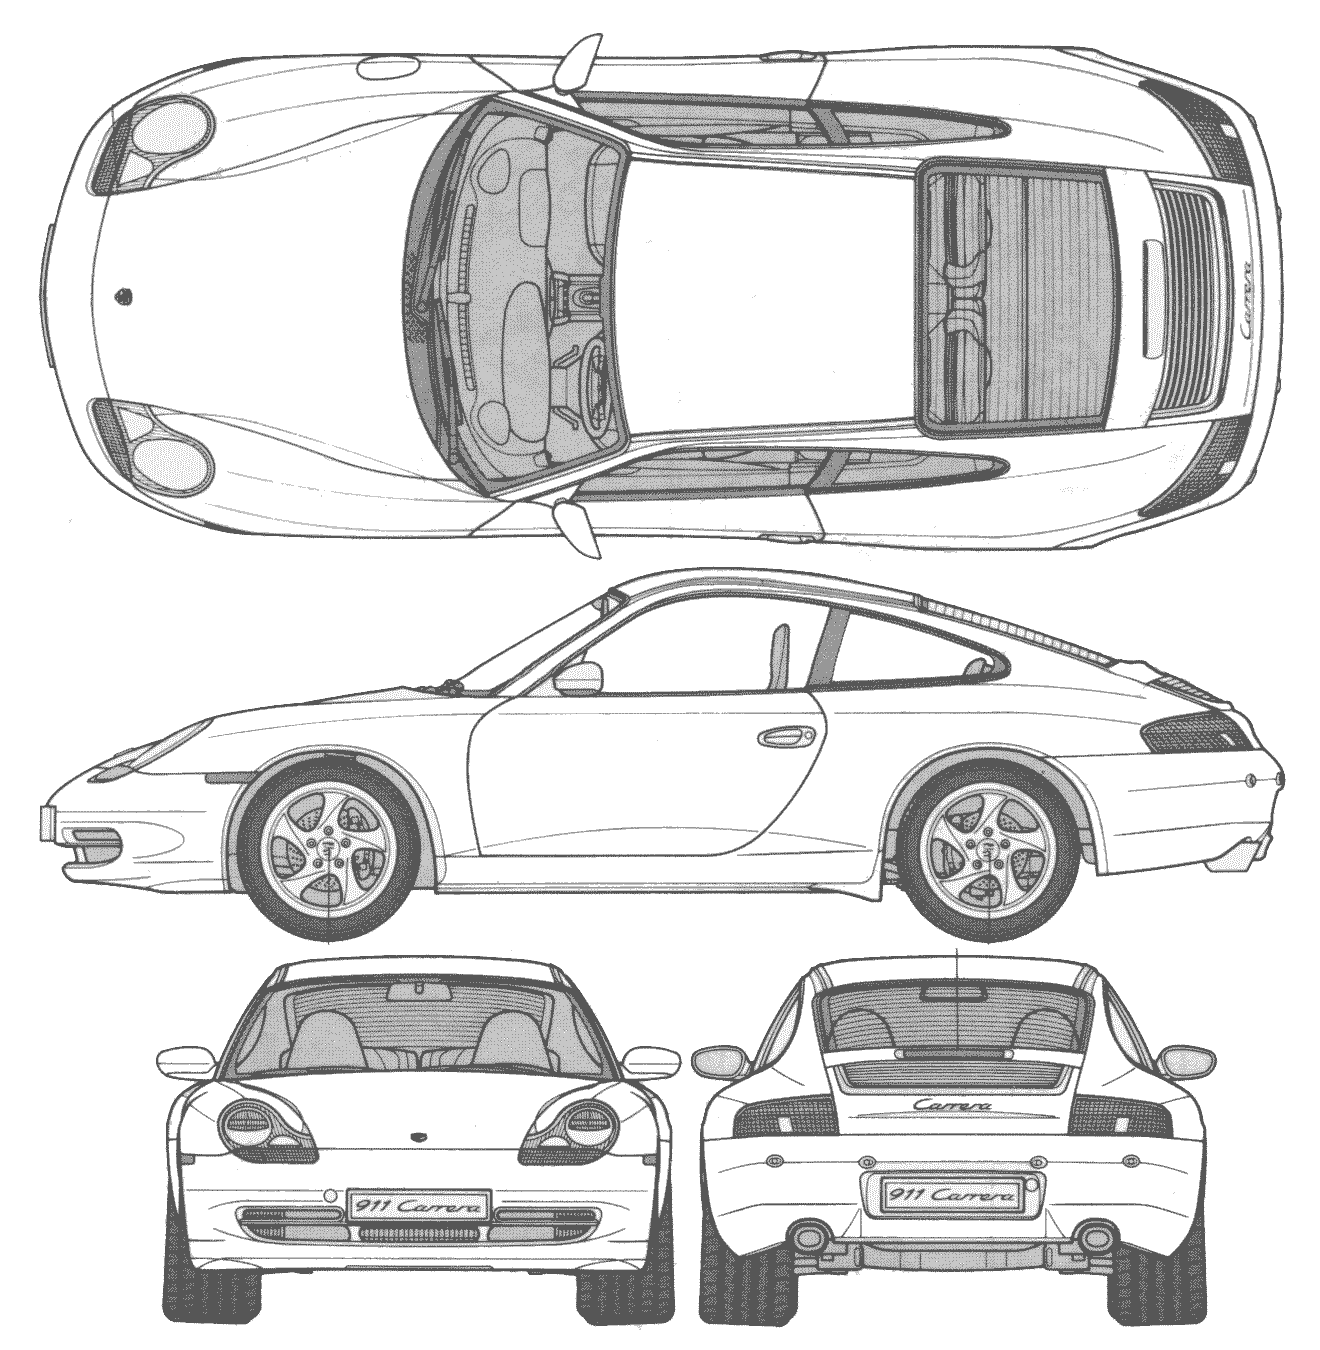 Porsche 911 Carrera blueprint